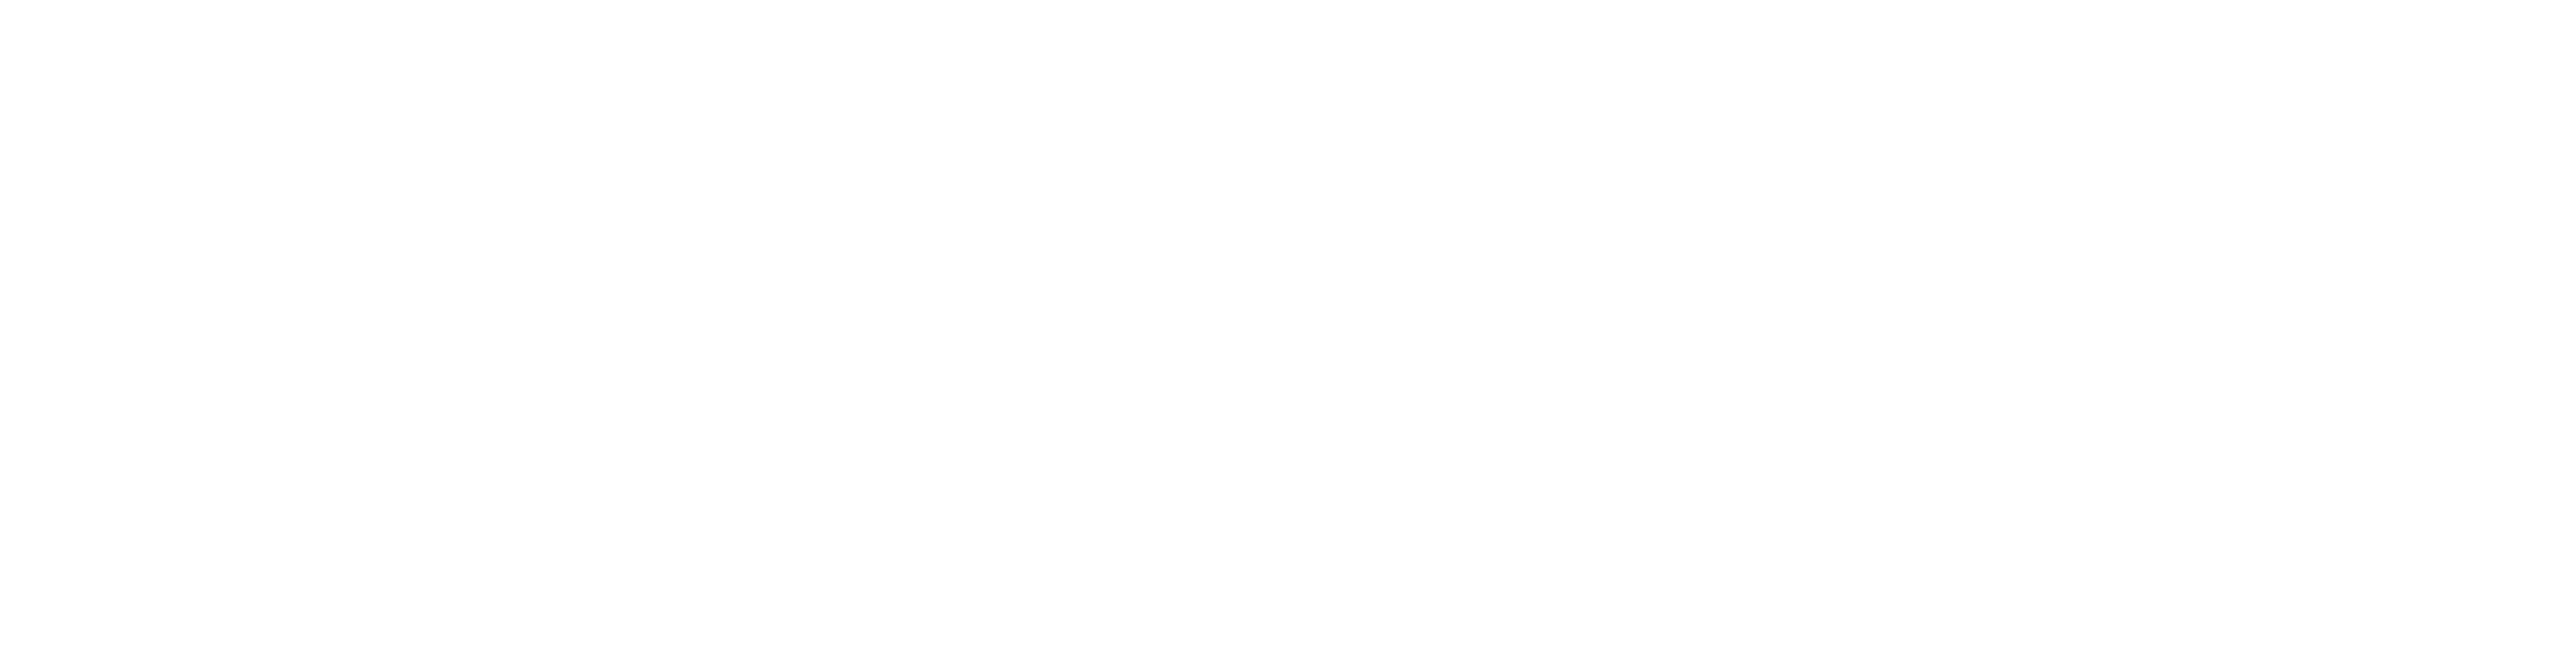 Prime Rib logo